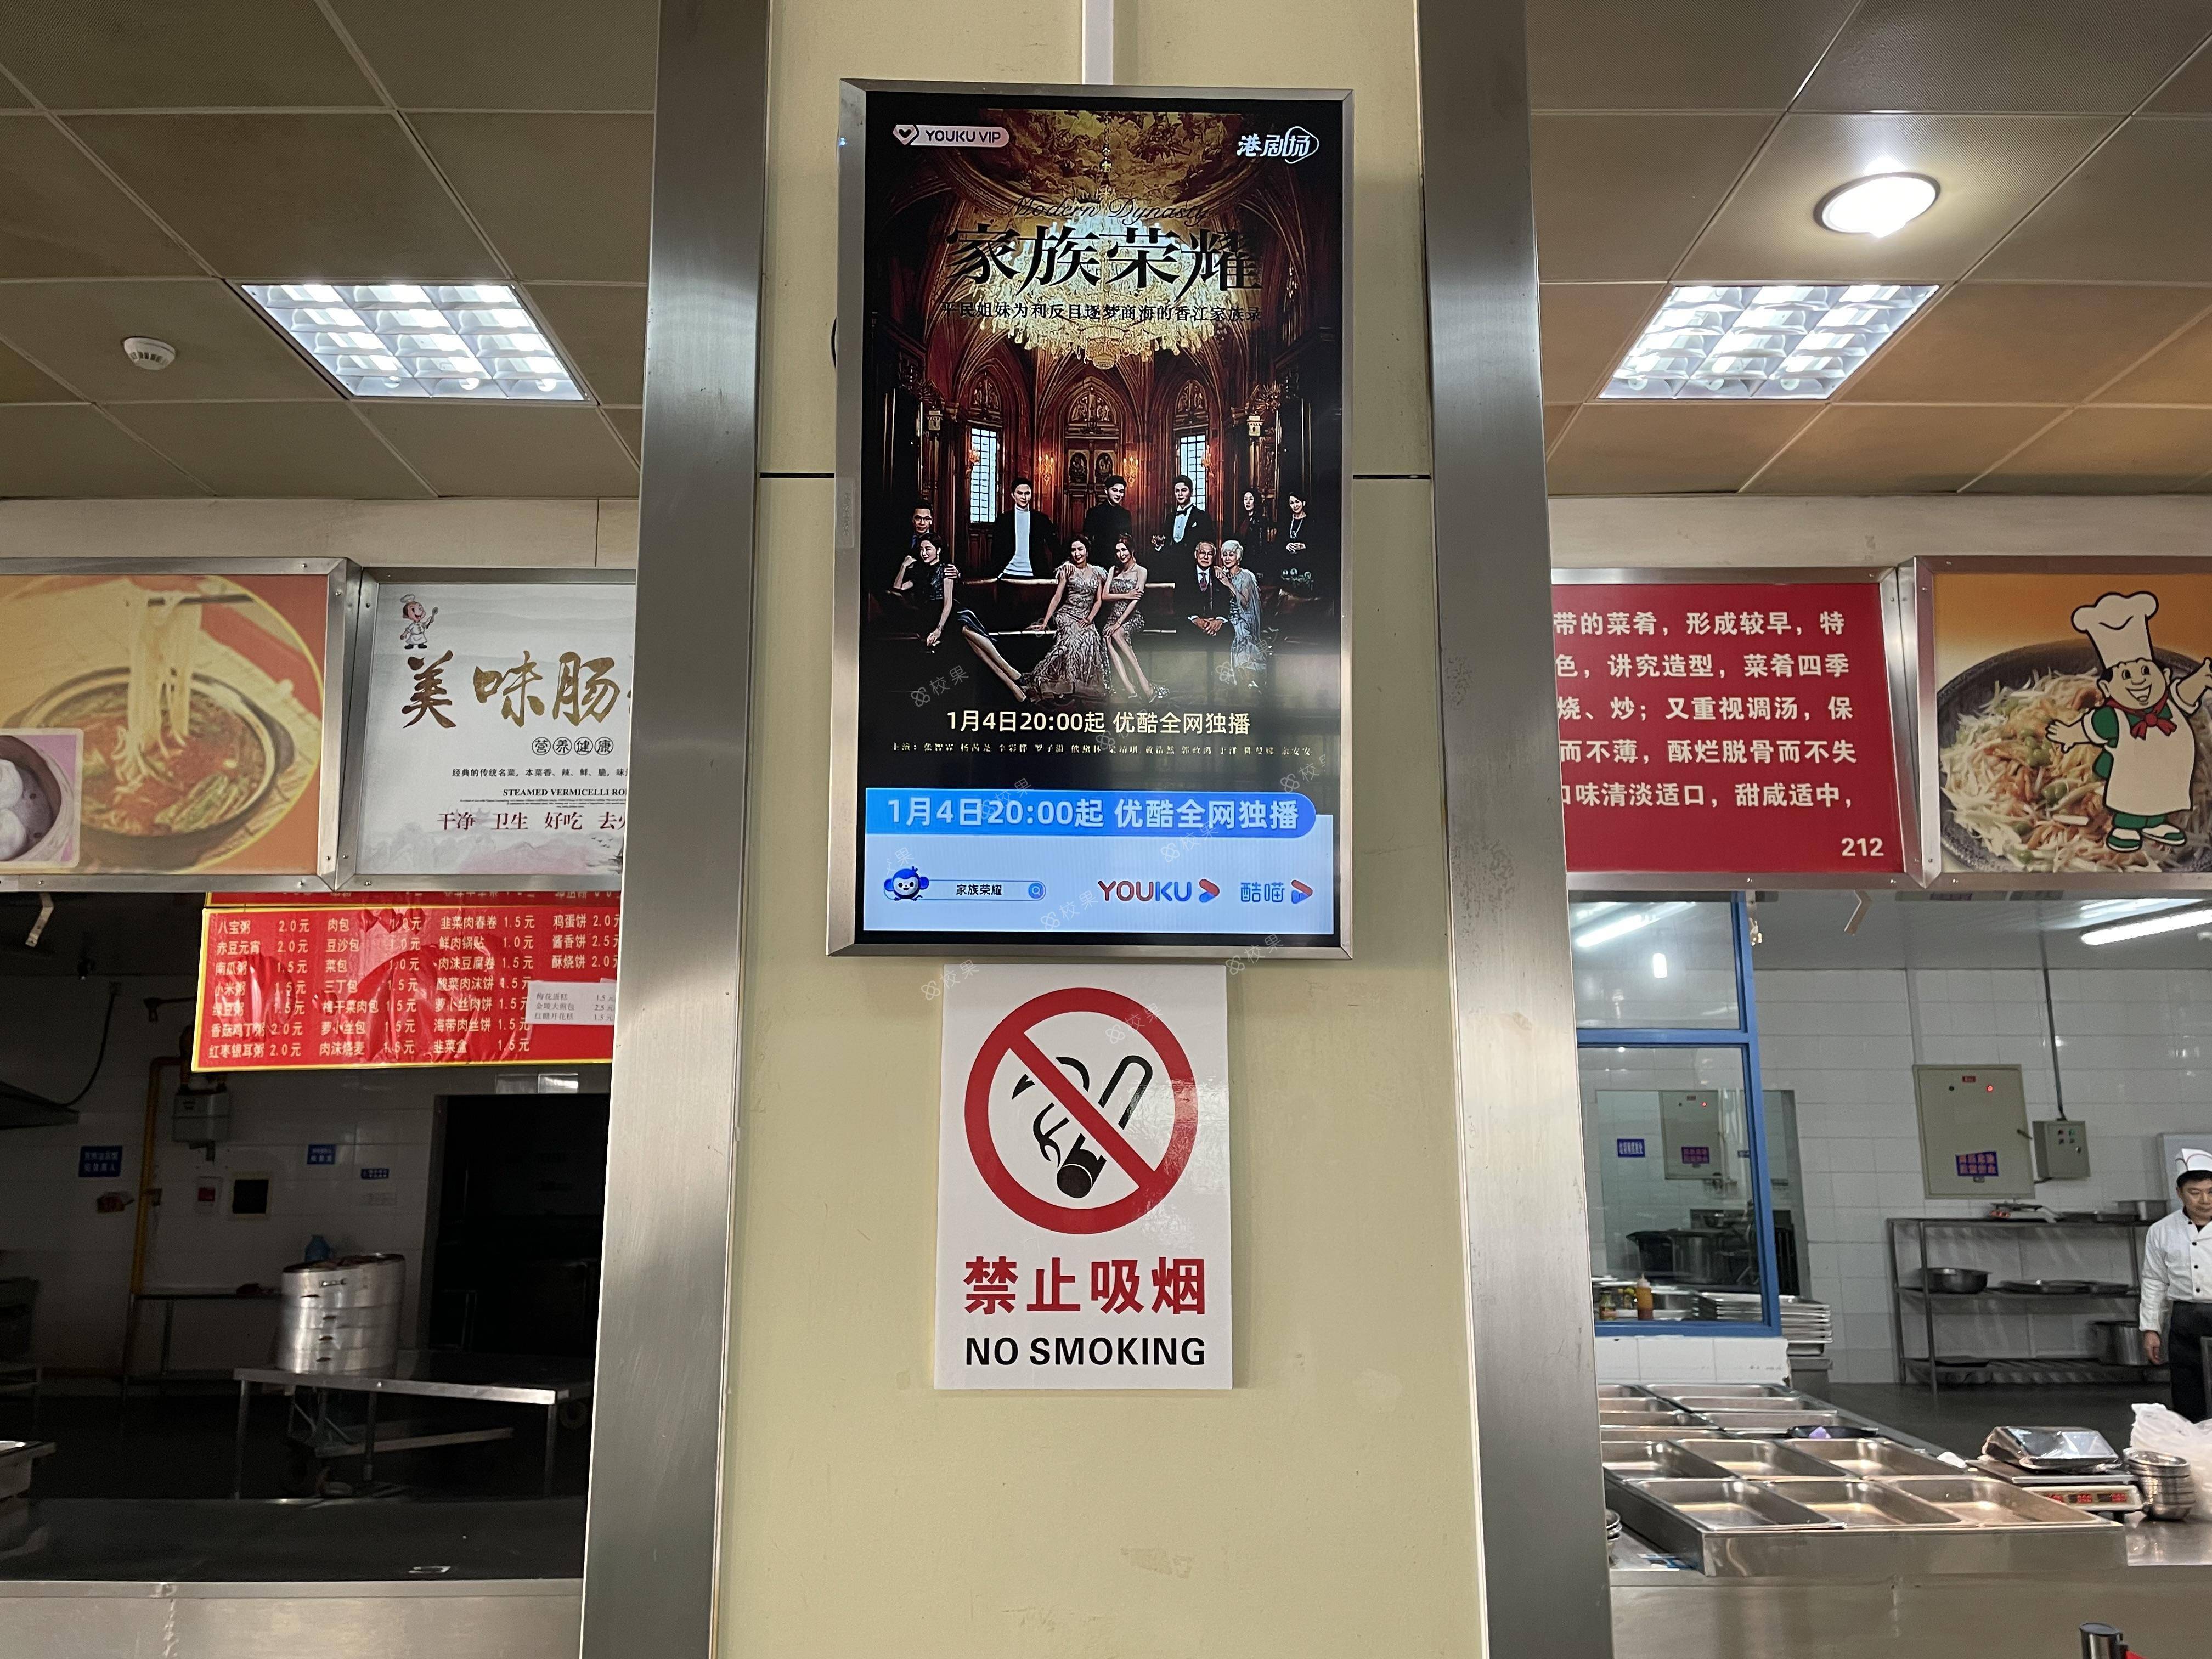 液晶屏广告 南京铁道职业技术学院